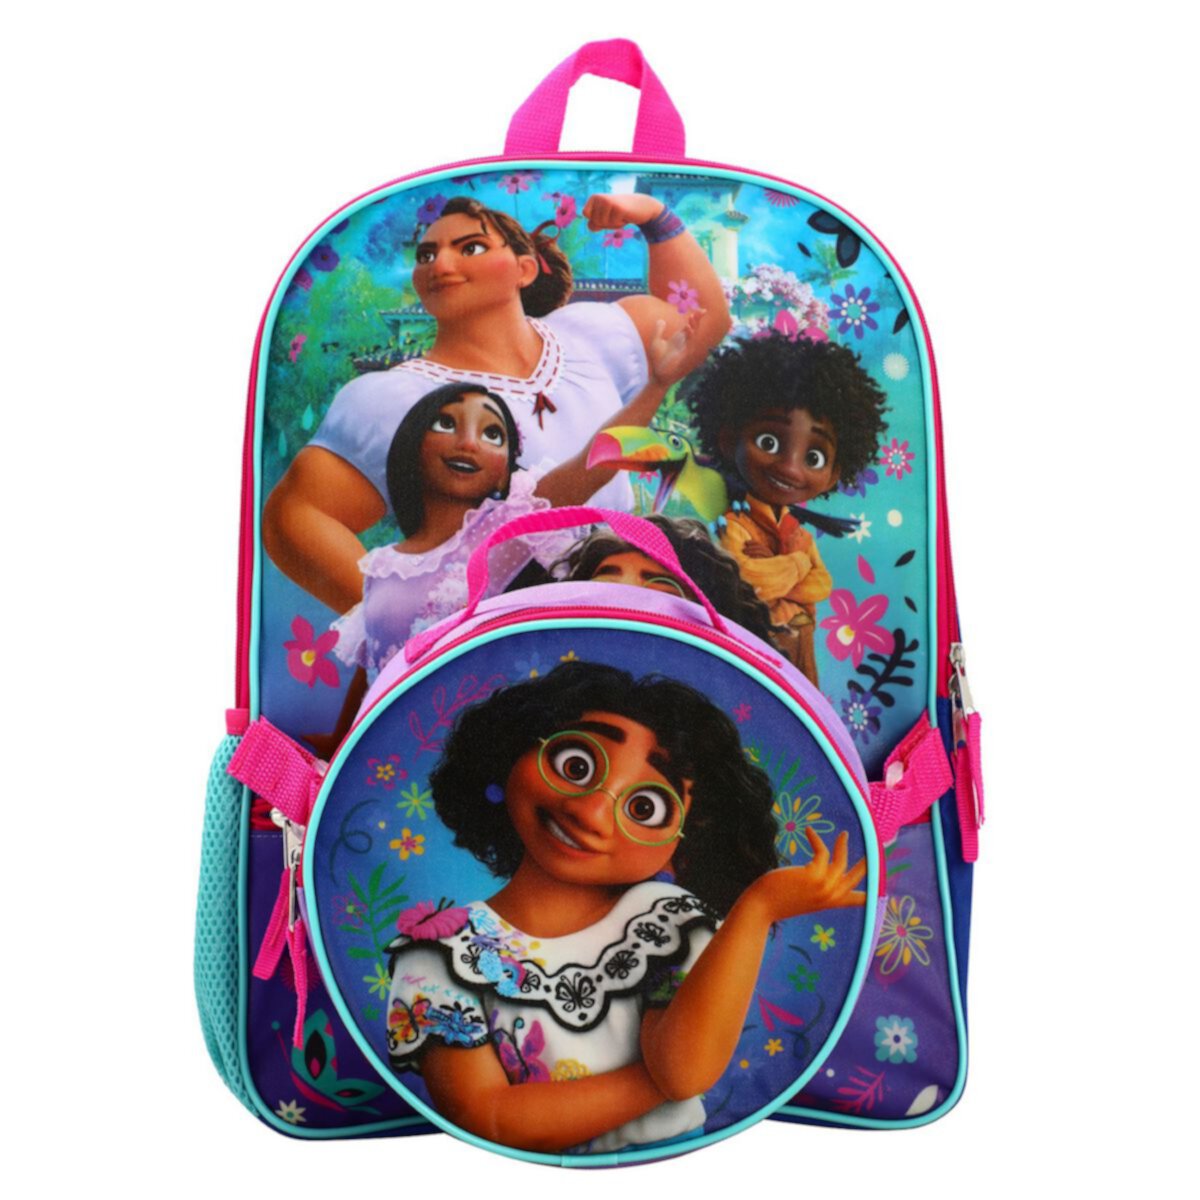 Семейный рюкзак и сумка для обеда Disney Encanto для девочек Licensed Character